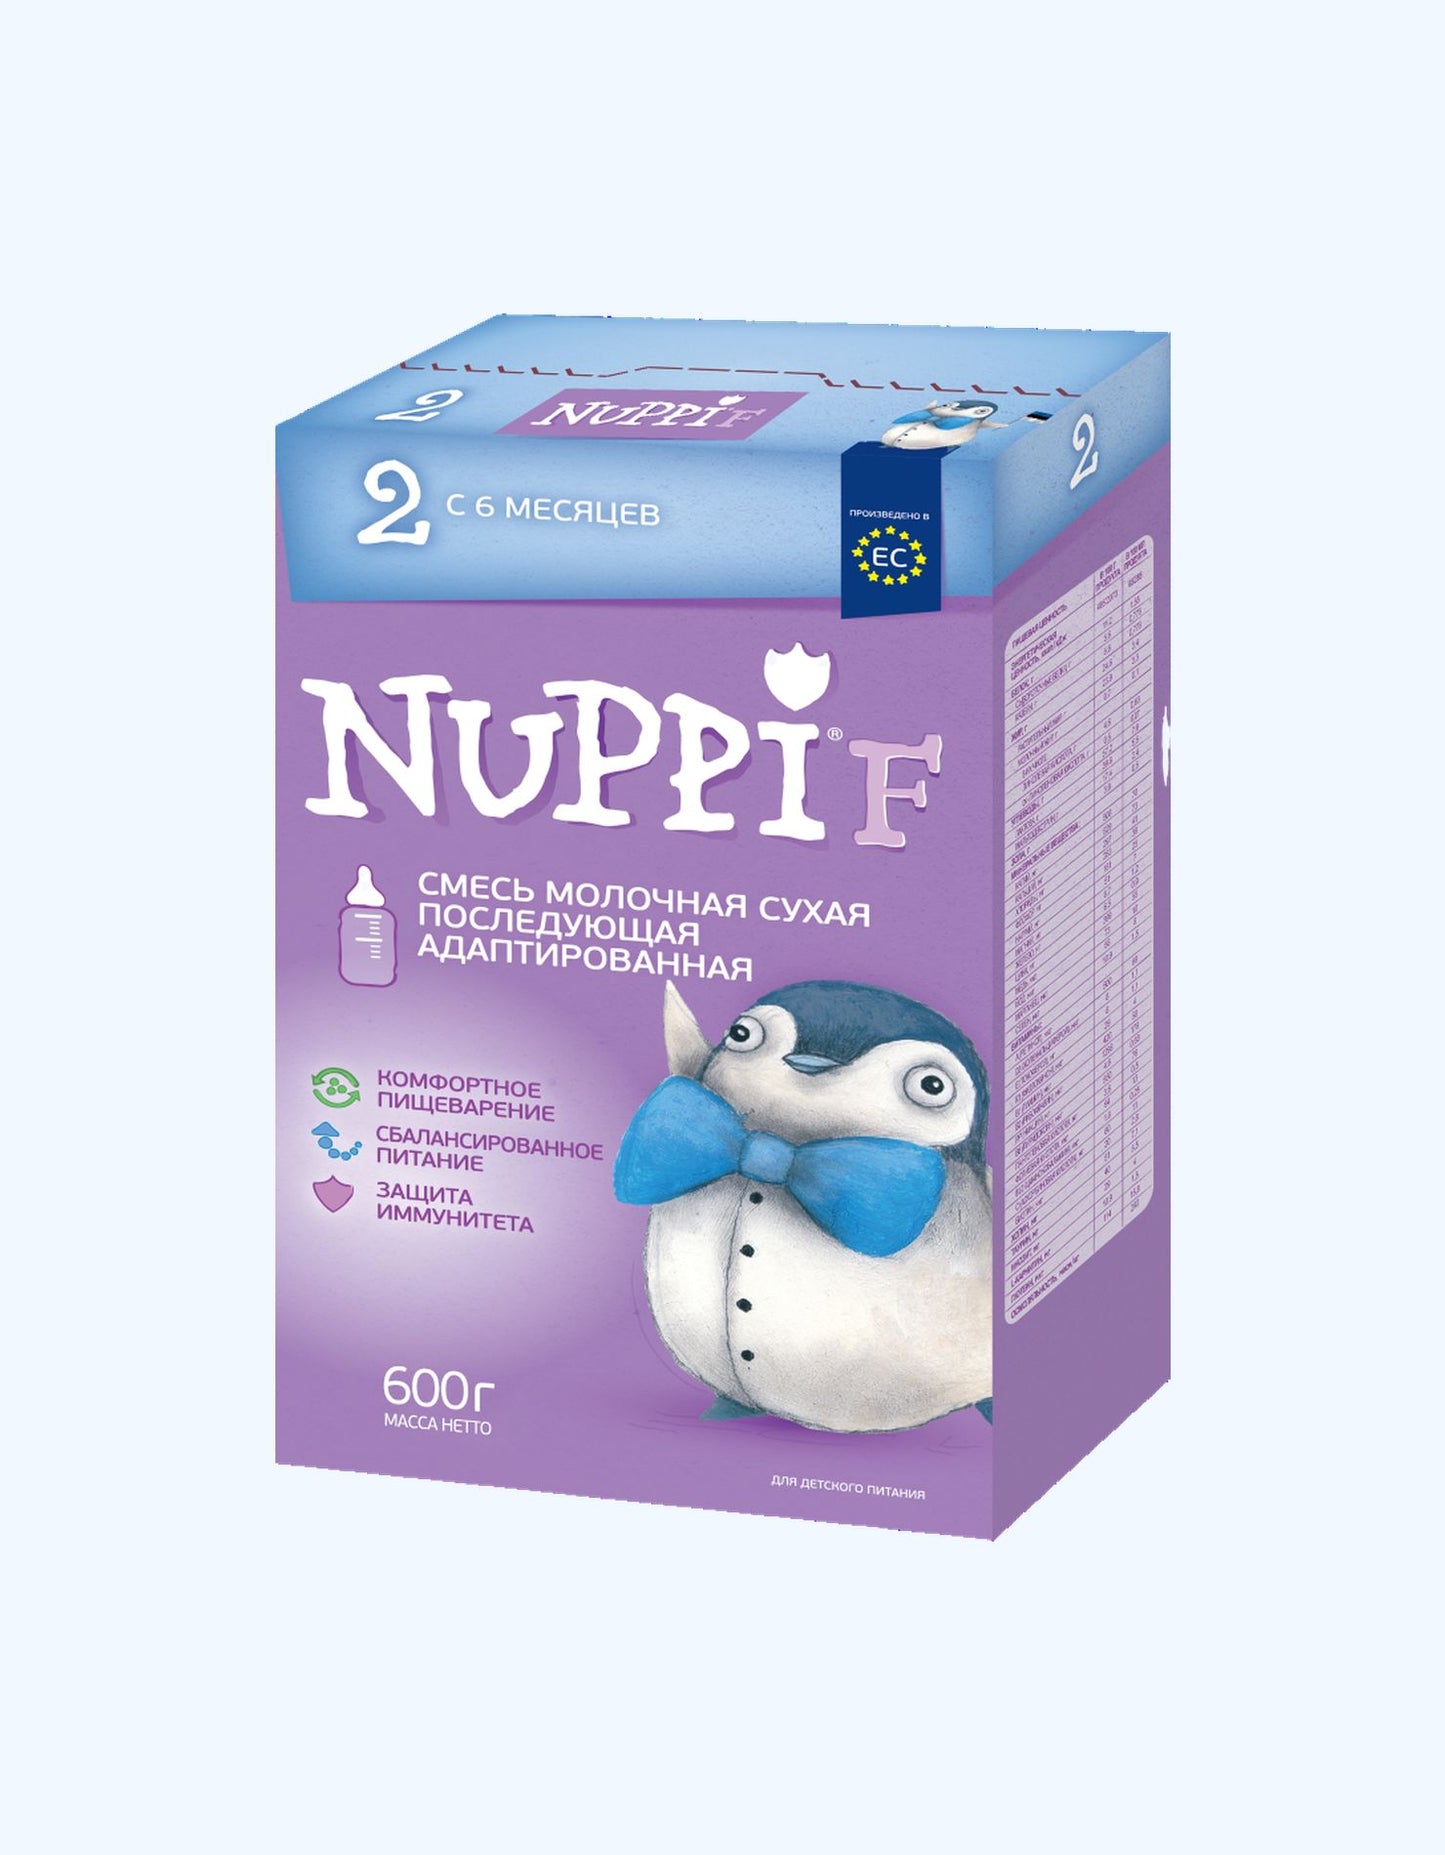 Nuppi F2, сухая молочная смесь, 6+ мес., последующая адаптированная, 300/600 г